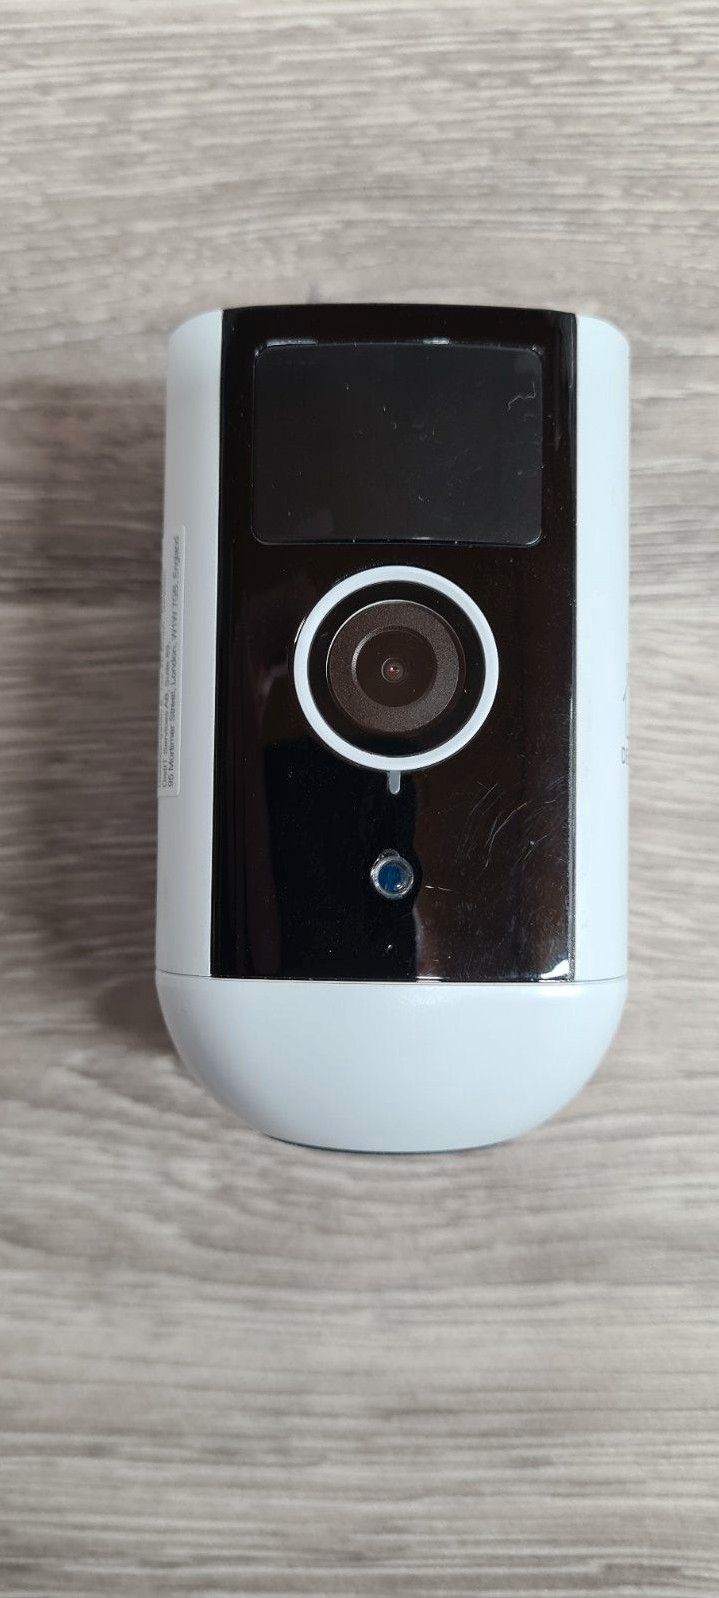 DELTACO Smarte Outdoor Akku-Überwachungskamera SH-IPC09 Test